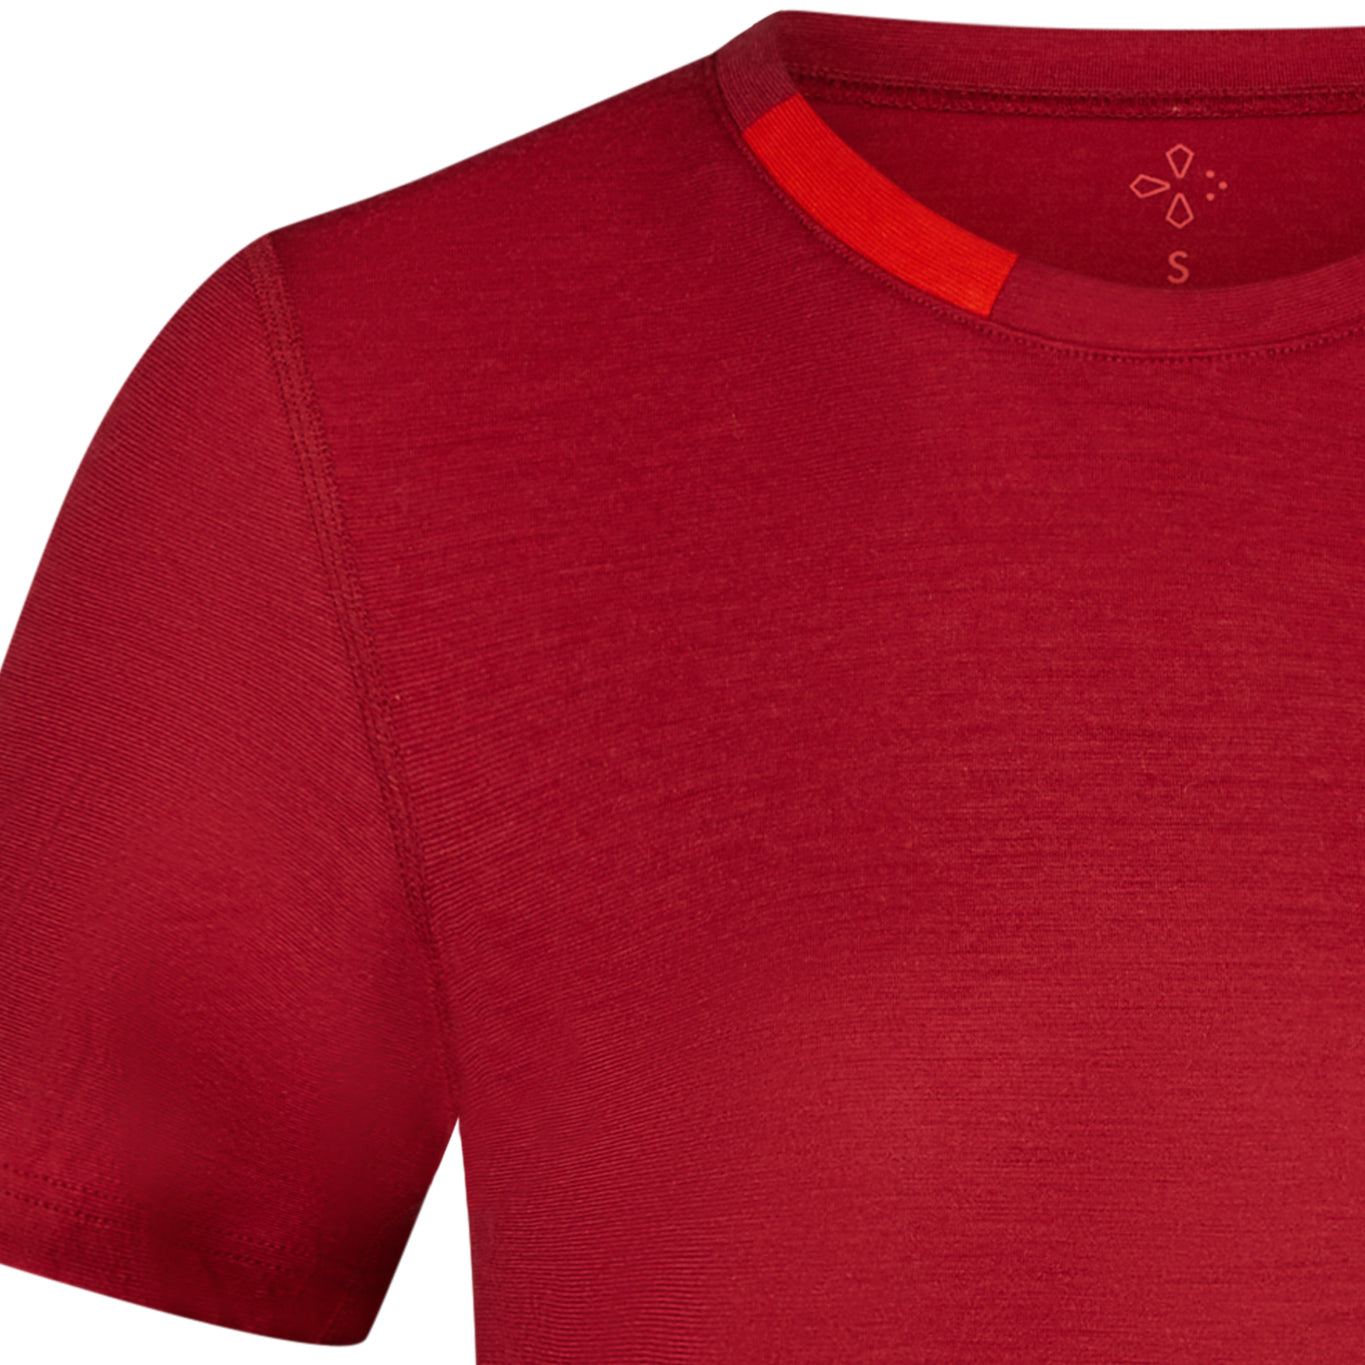 Rotes T-Shirt mit 100 Prozent biologischer Merinowolle, reine Schurwolle, ökologisch, nachhaltig, fair und für Sie in Deutschland hergestellt. Detail.